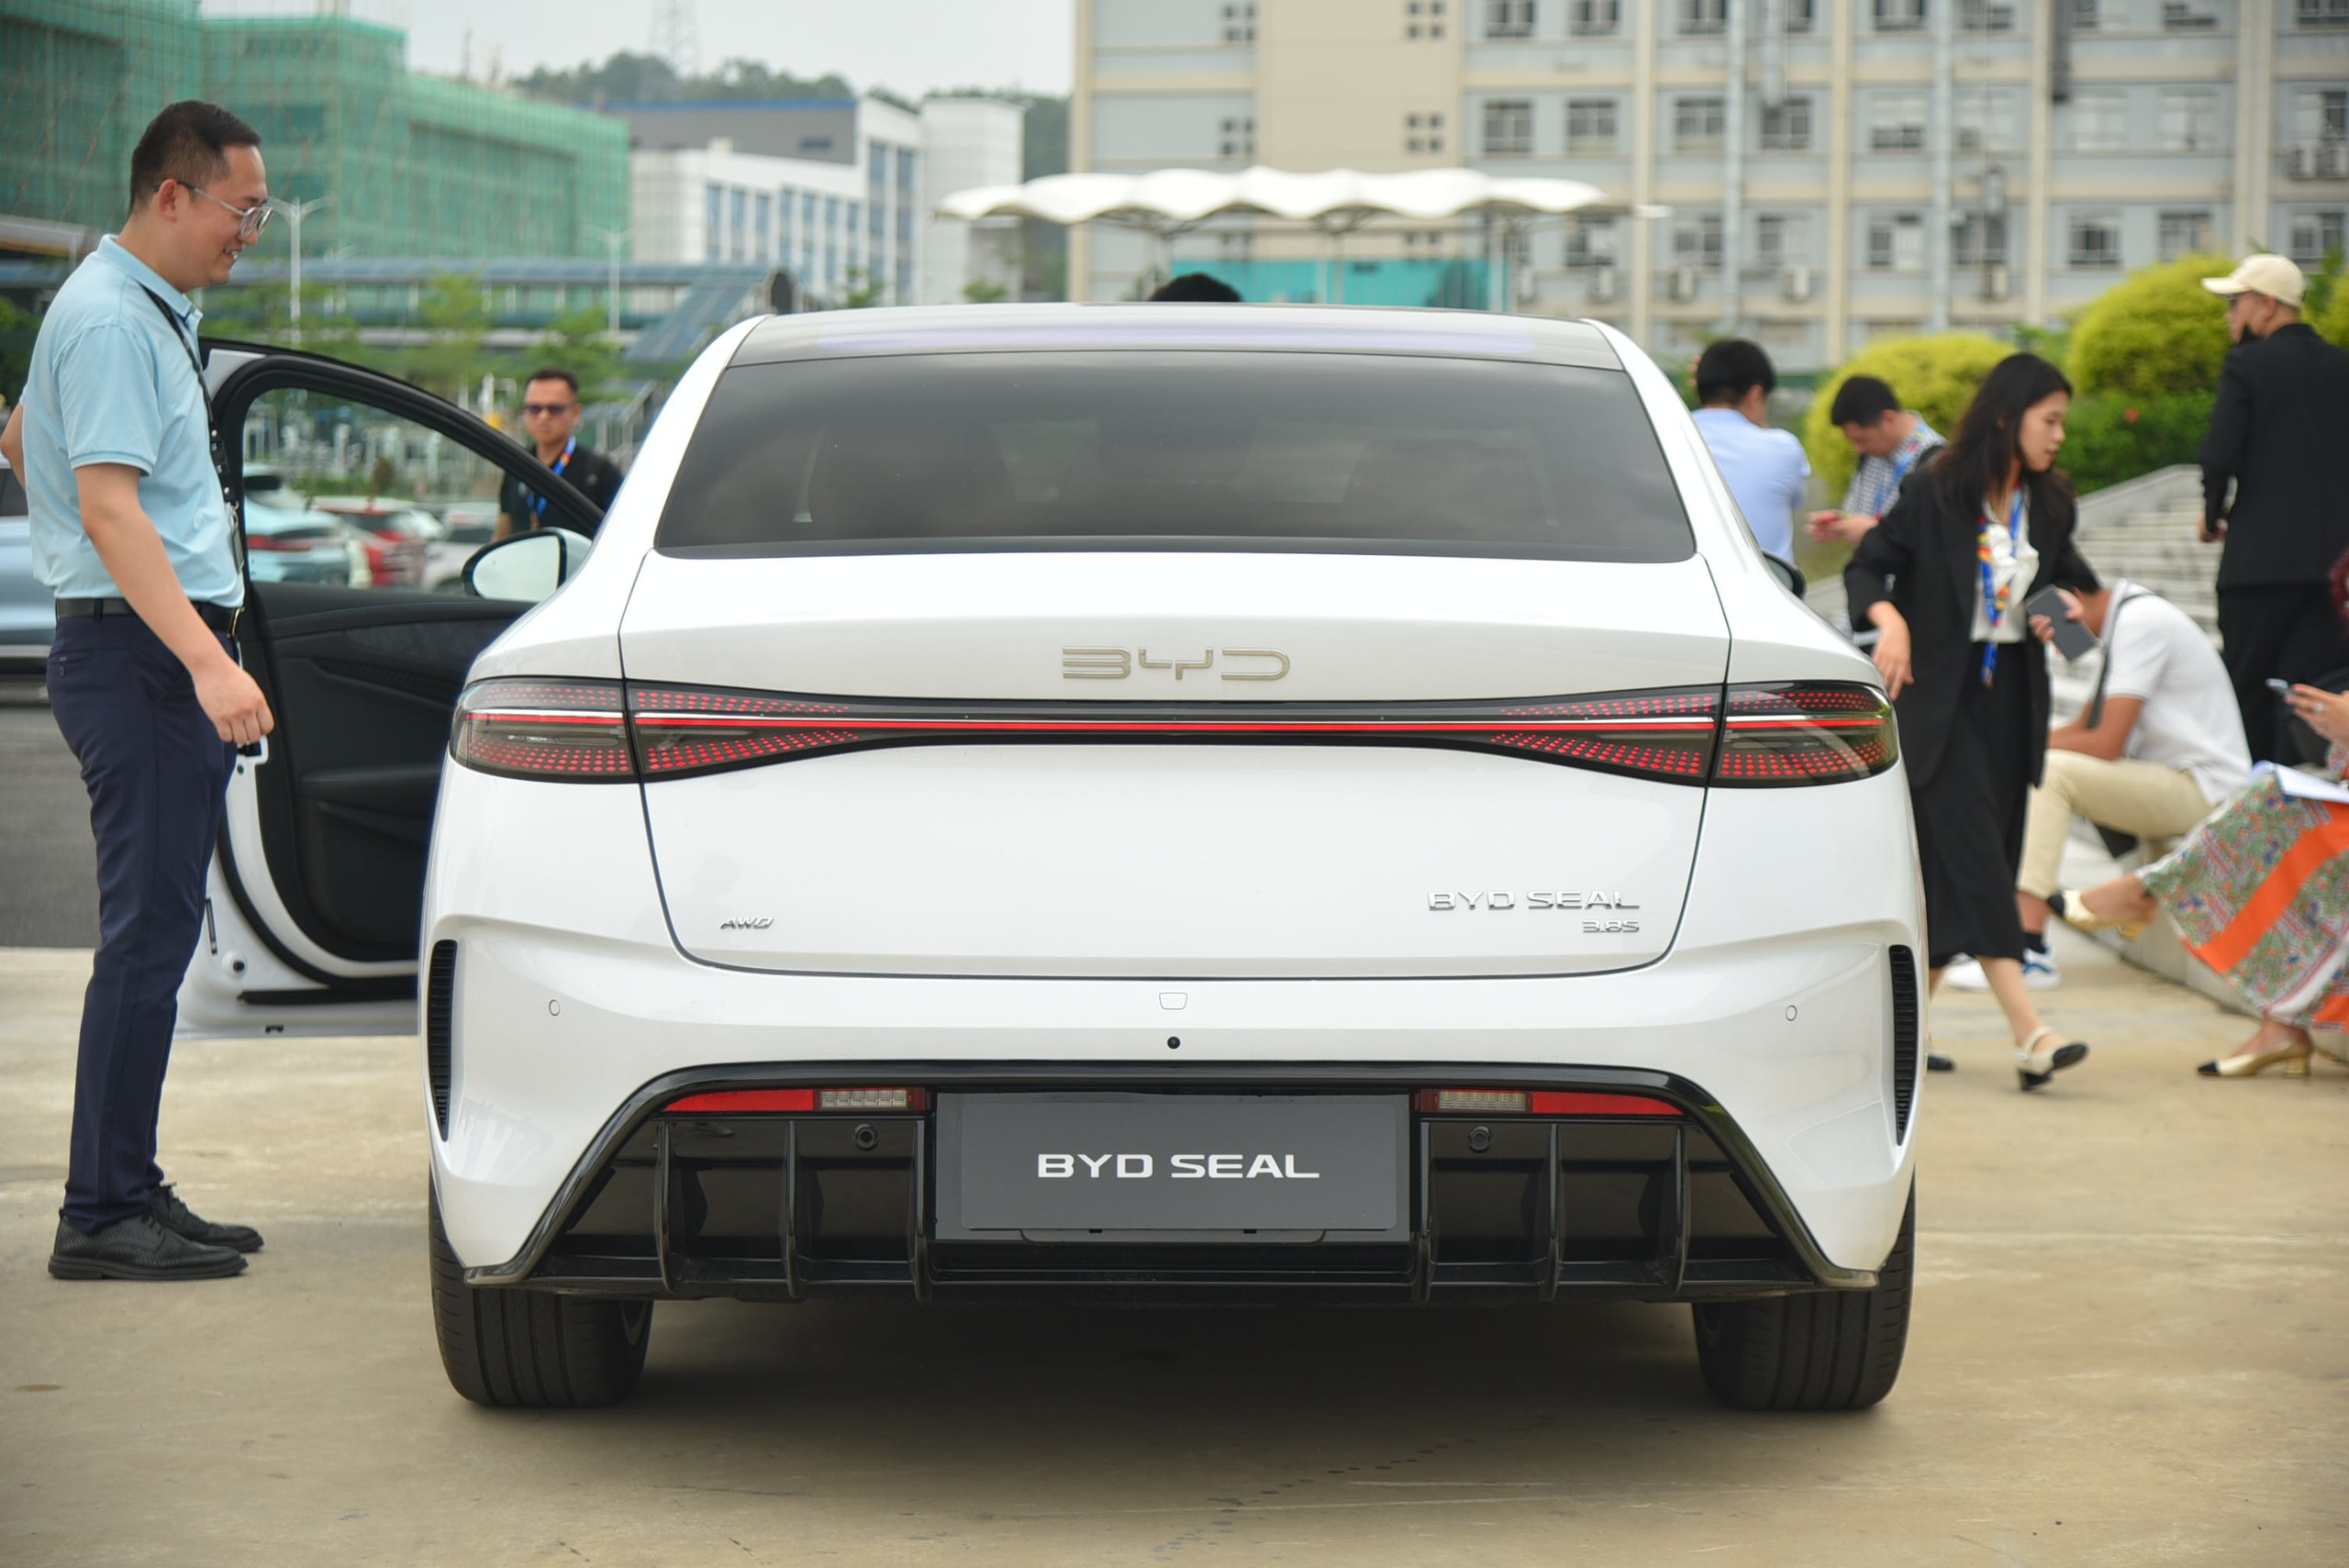 BYD Seal sắp về Việt Nam, bộ ảnh thực tế này cho thấy mẫu sedan ngang cỡ Camry này có gì 'hot' để chờ đợi - Ảnh 7.'hot' để chờ đợi - Ảnh 7.